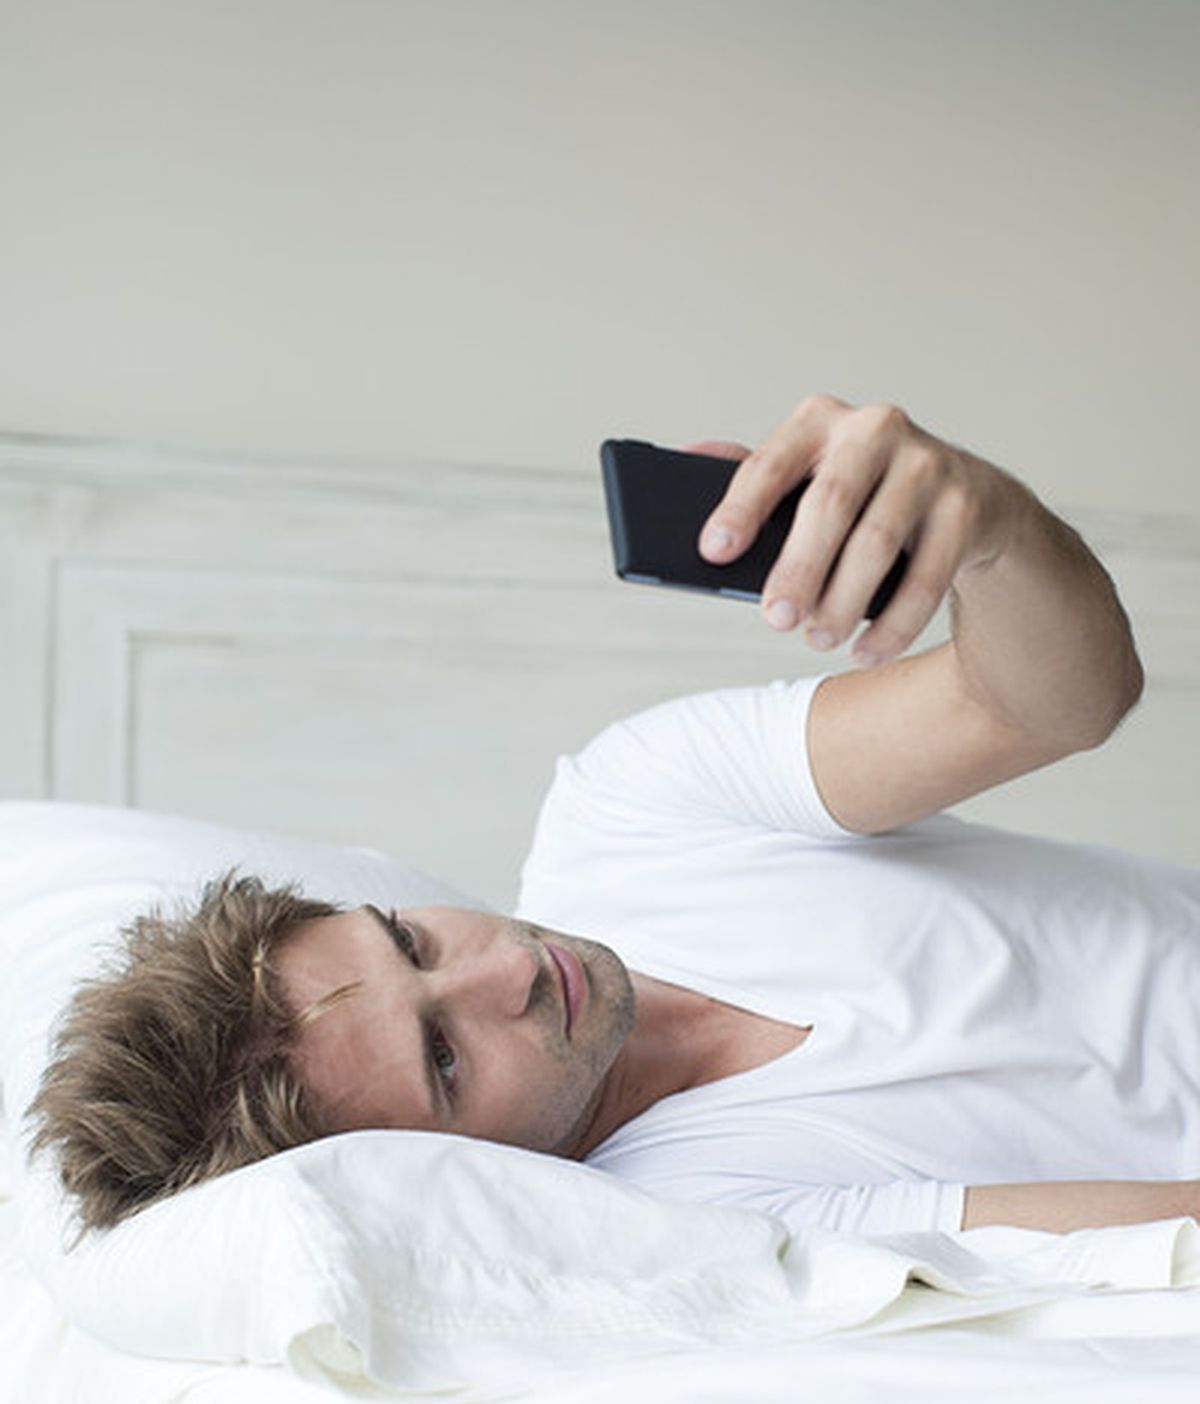 No es bueno usar el móvil antes de dormir